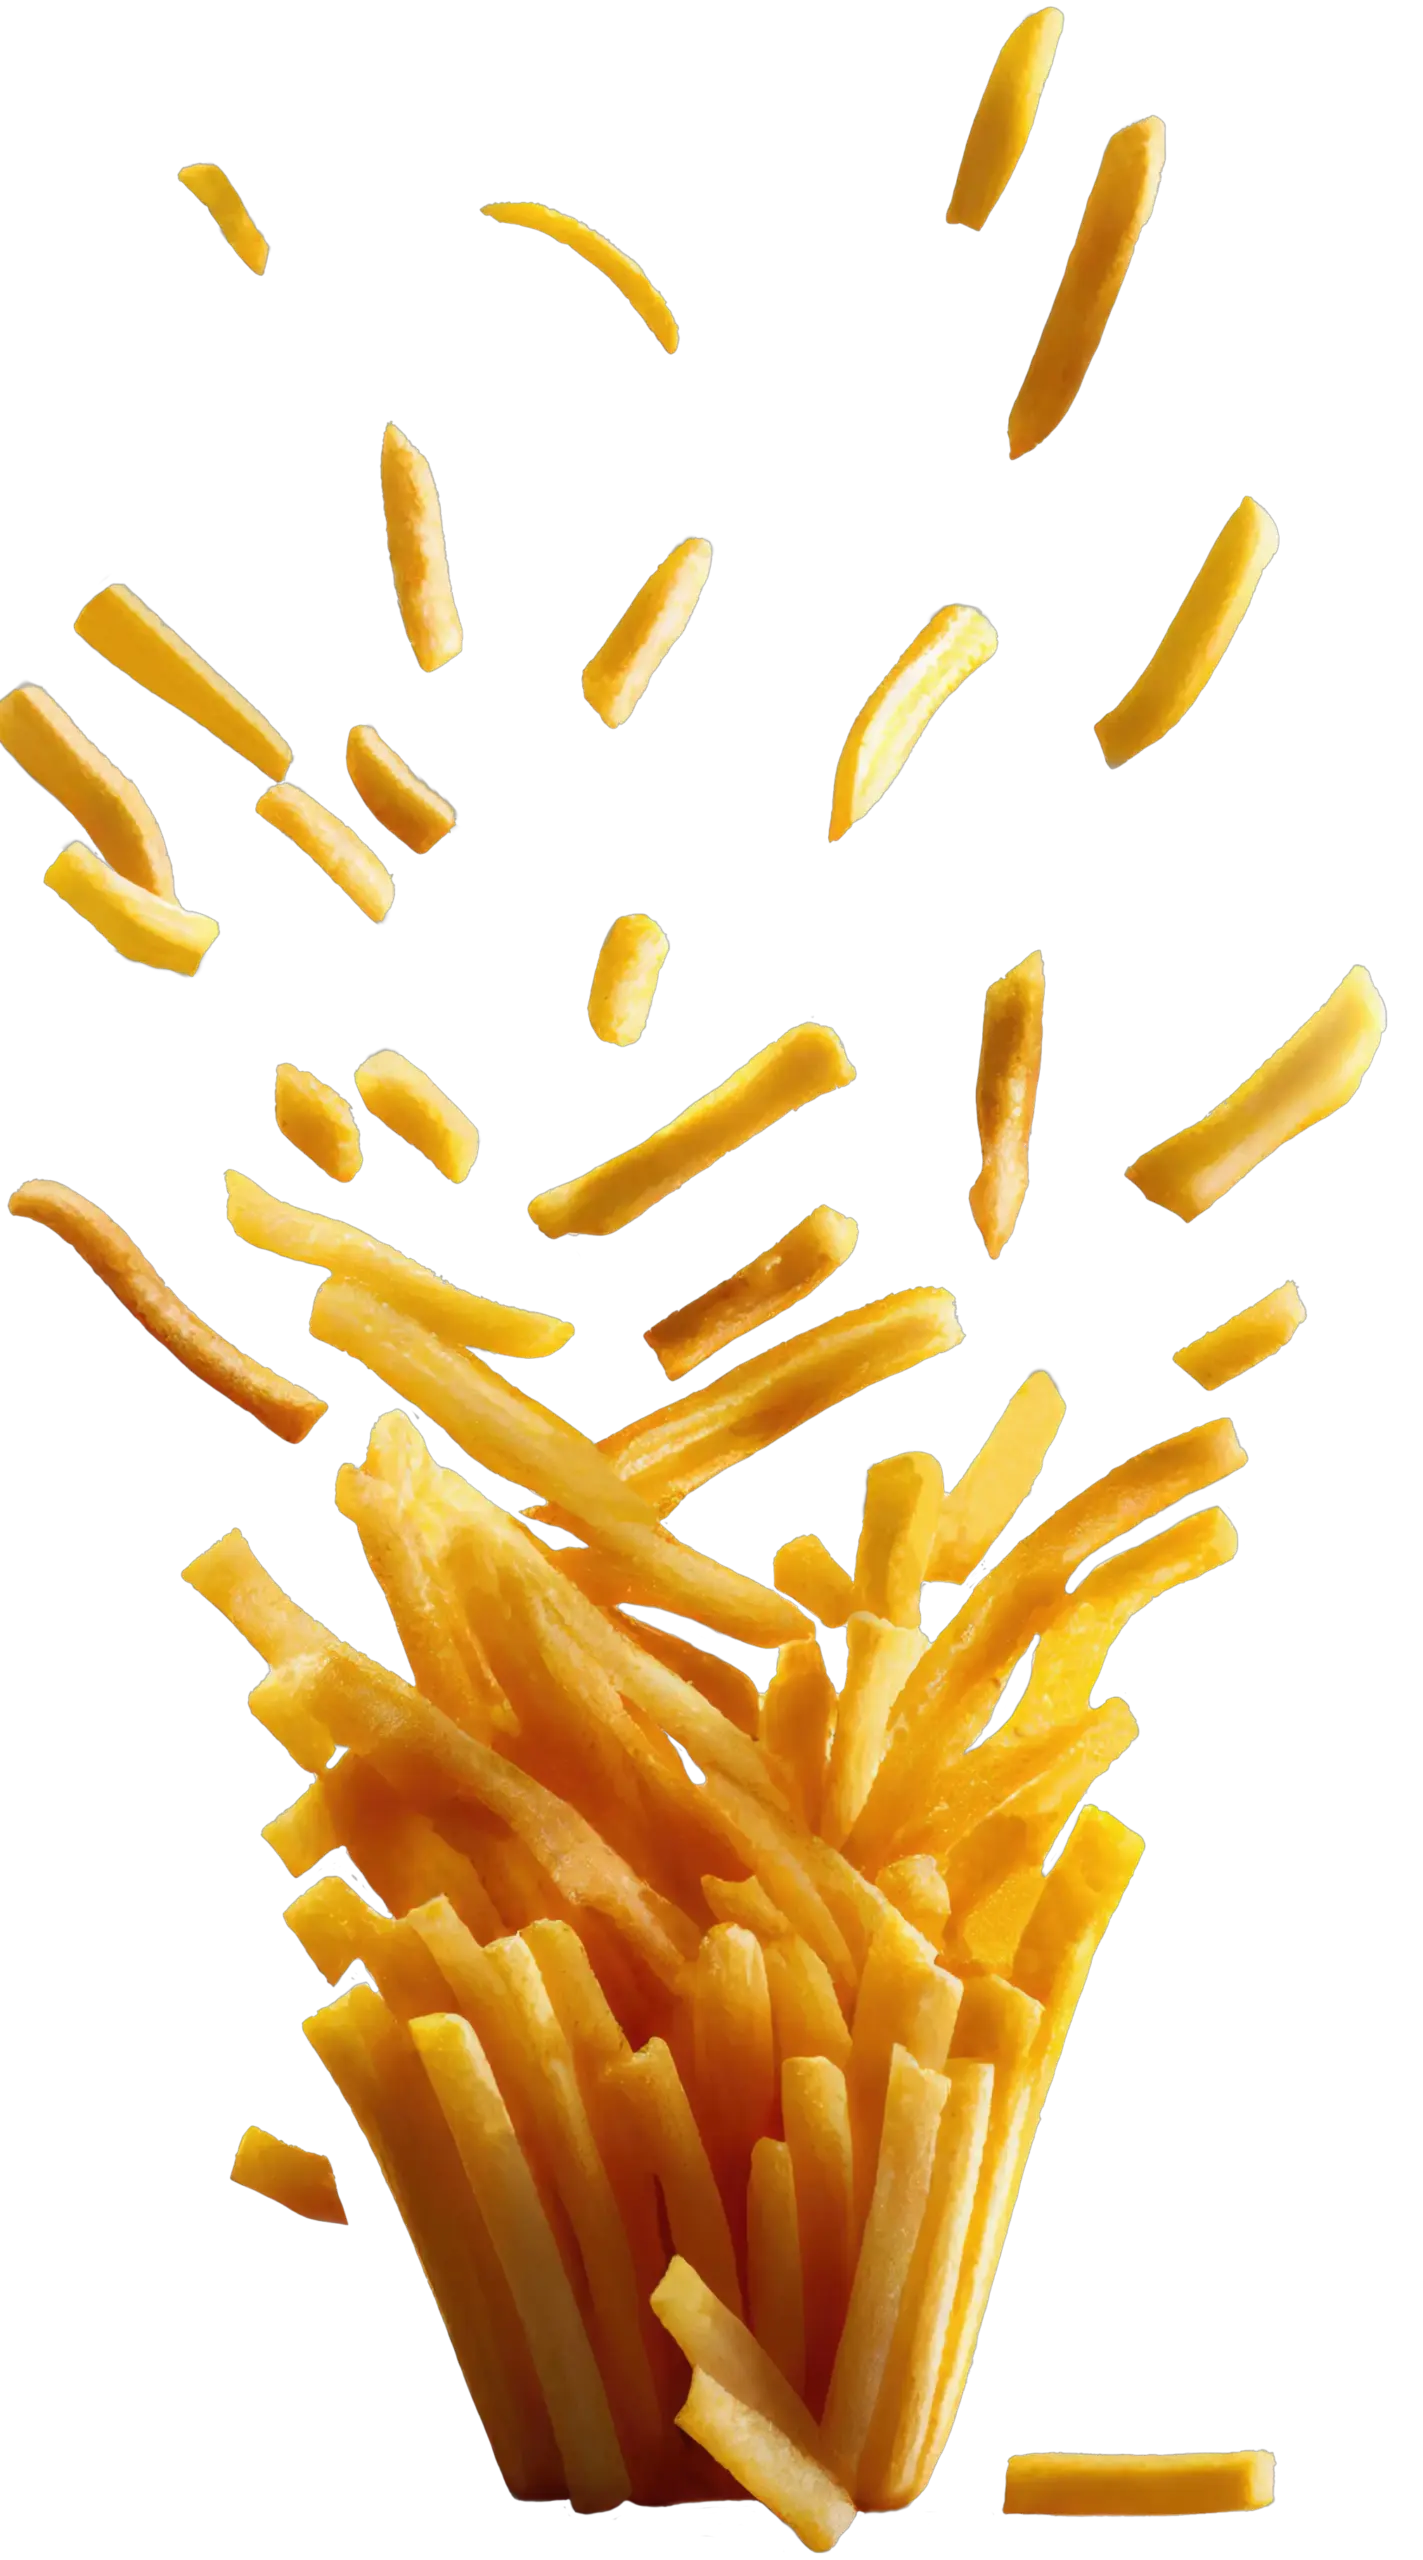 Fries-Vending-Machine_fries-floating-fries